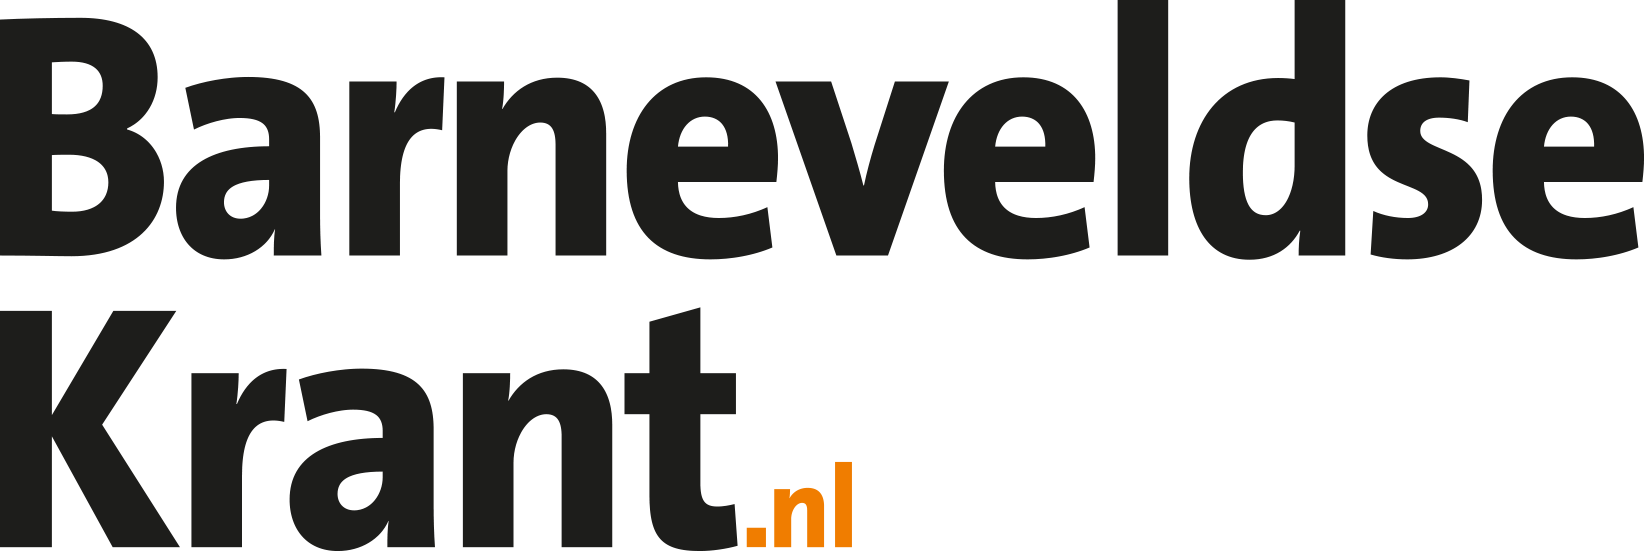 Logo barneveldsekrant.nl